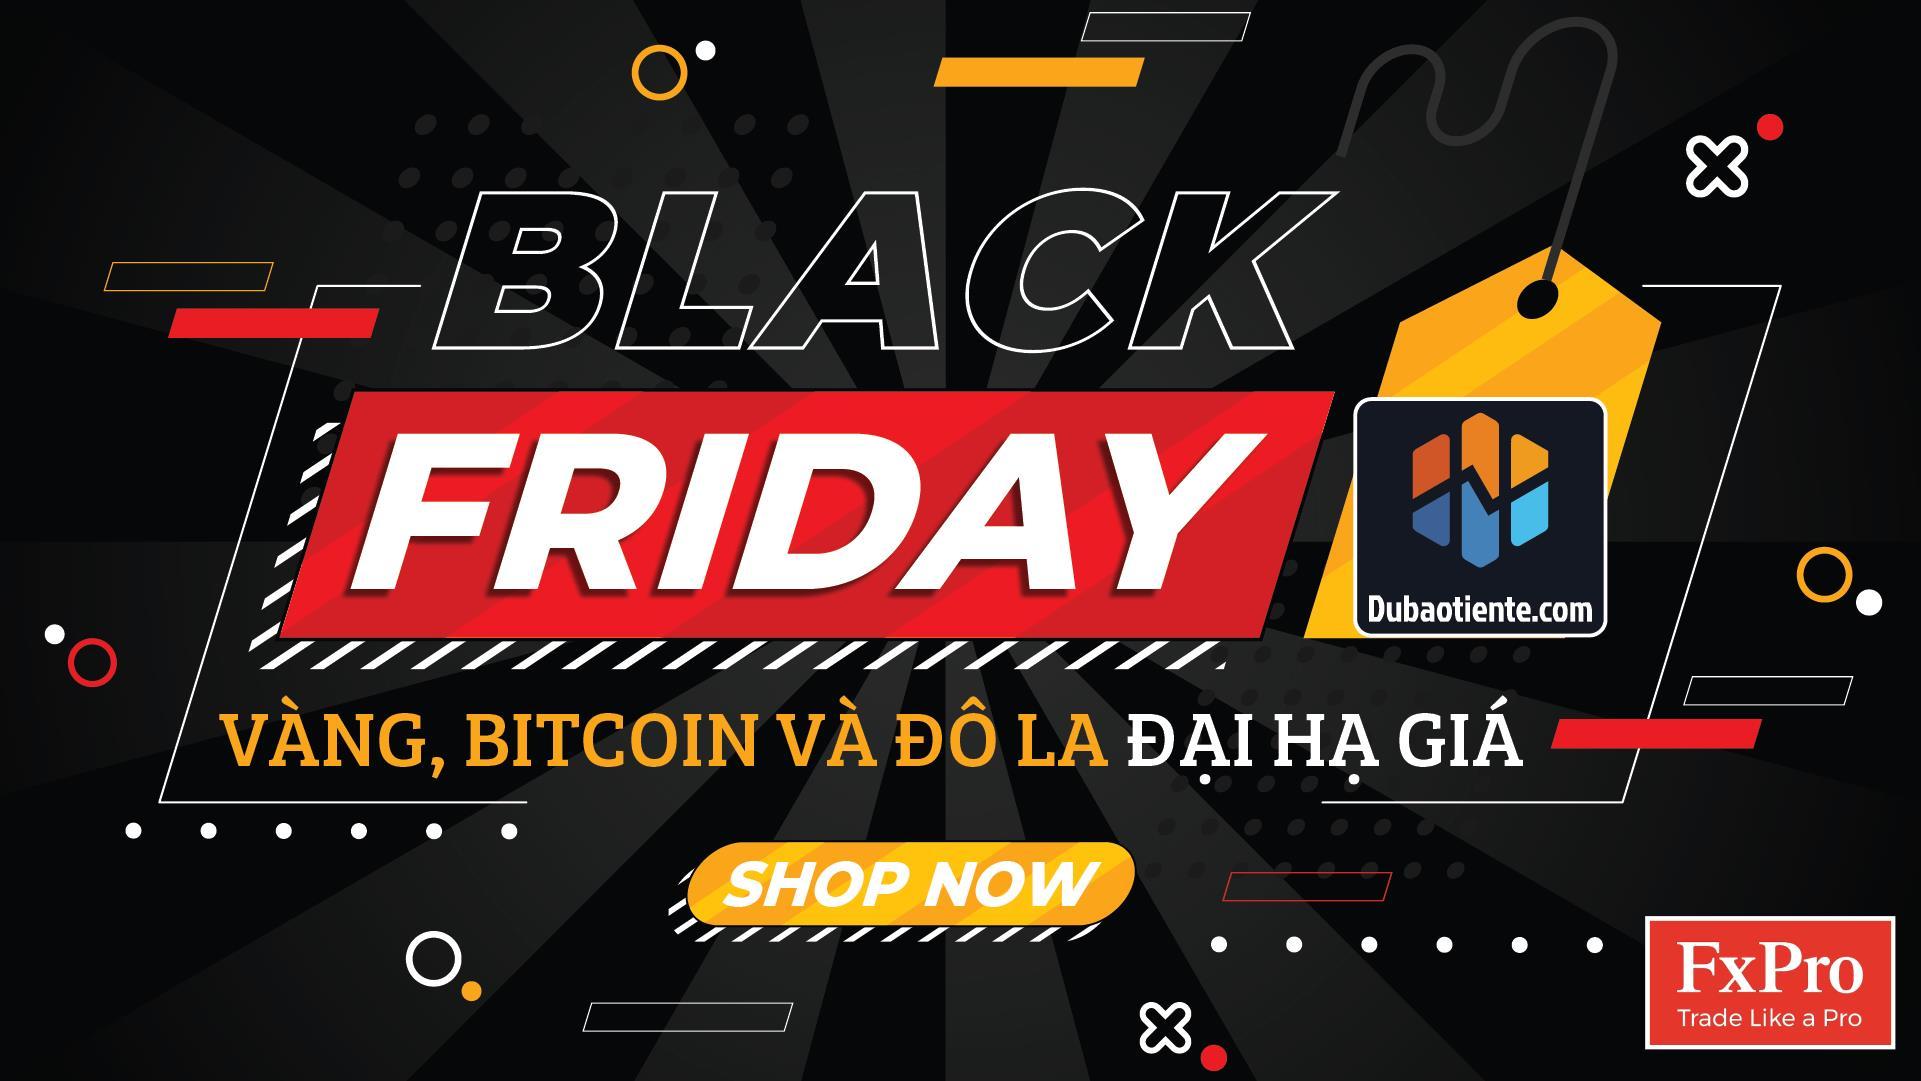 [ BẢN TIN DỰ BÁO TIỀN TỆ ] Vàng, Bitcoin & Đô La "Đại Hạ Giá" Nhân Ngày Black Friday